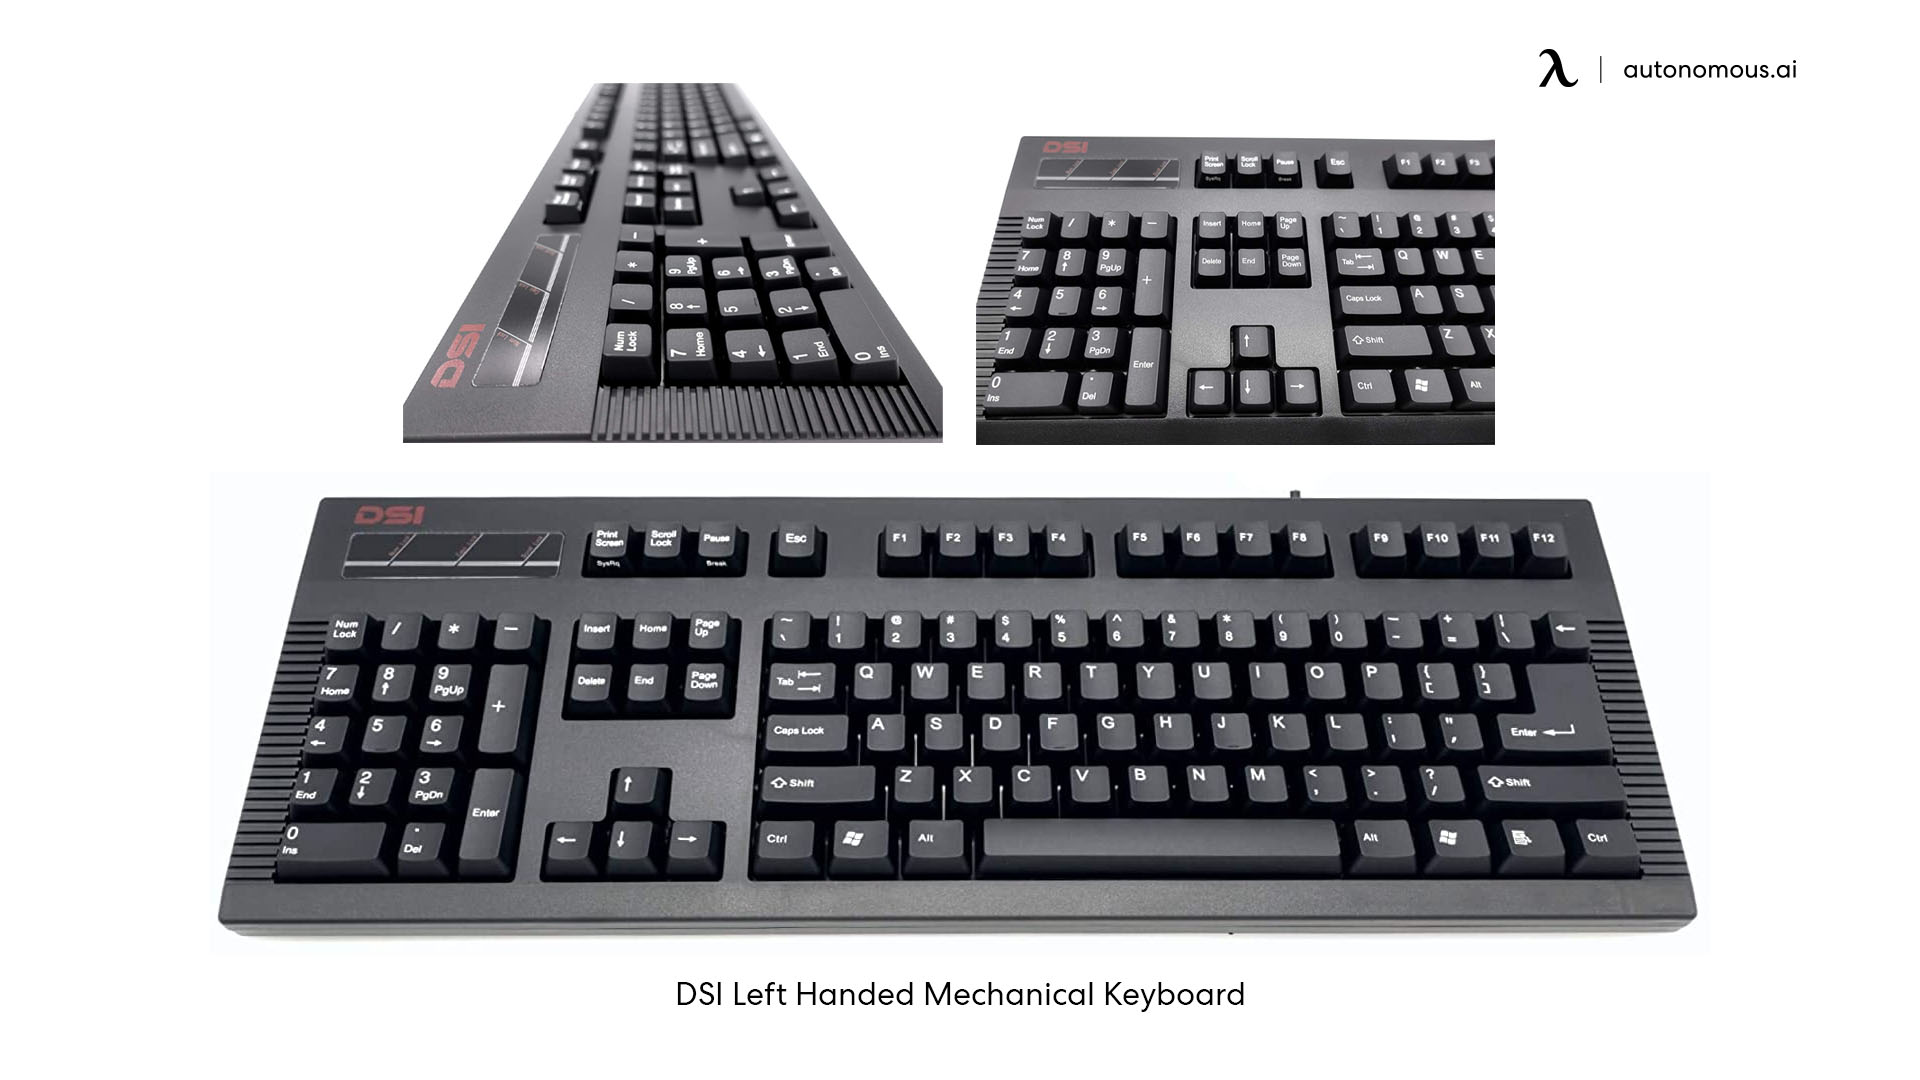 Keyboards with left-handed desks